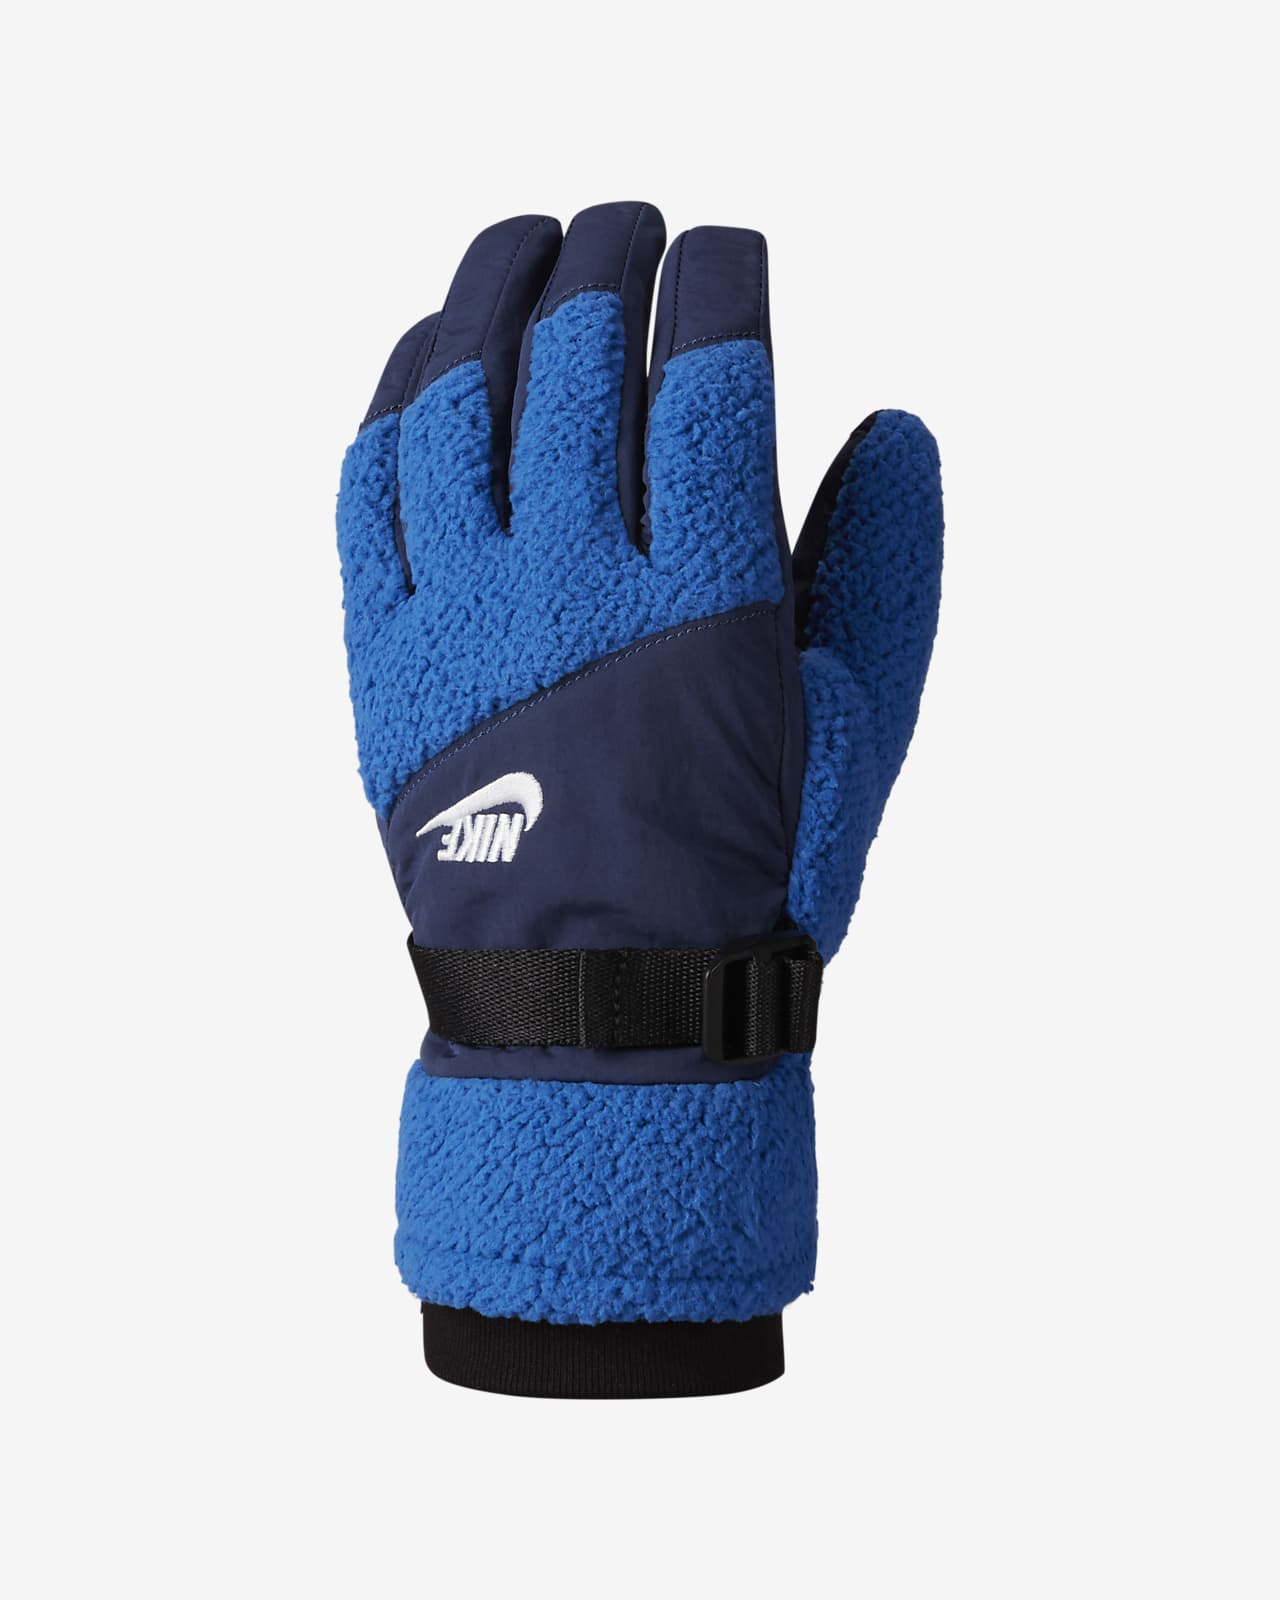 Nike Men's Fleece Gloves